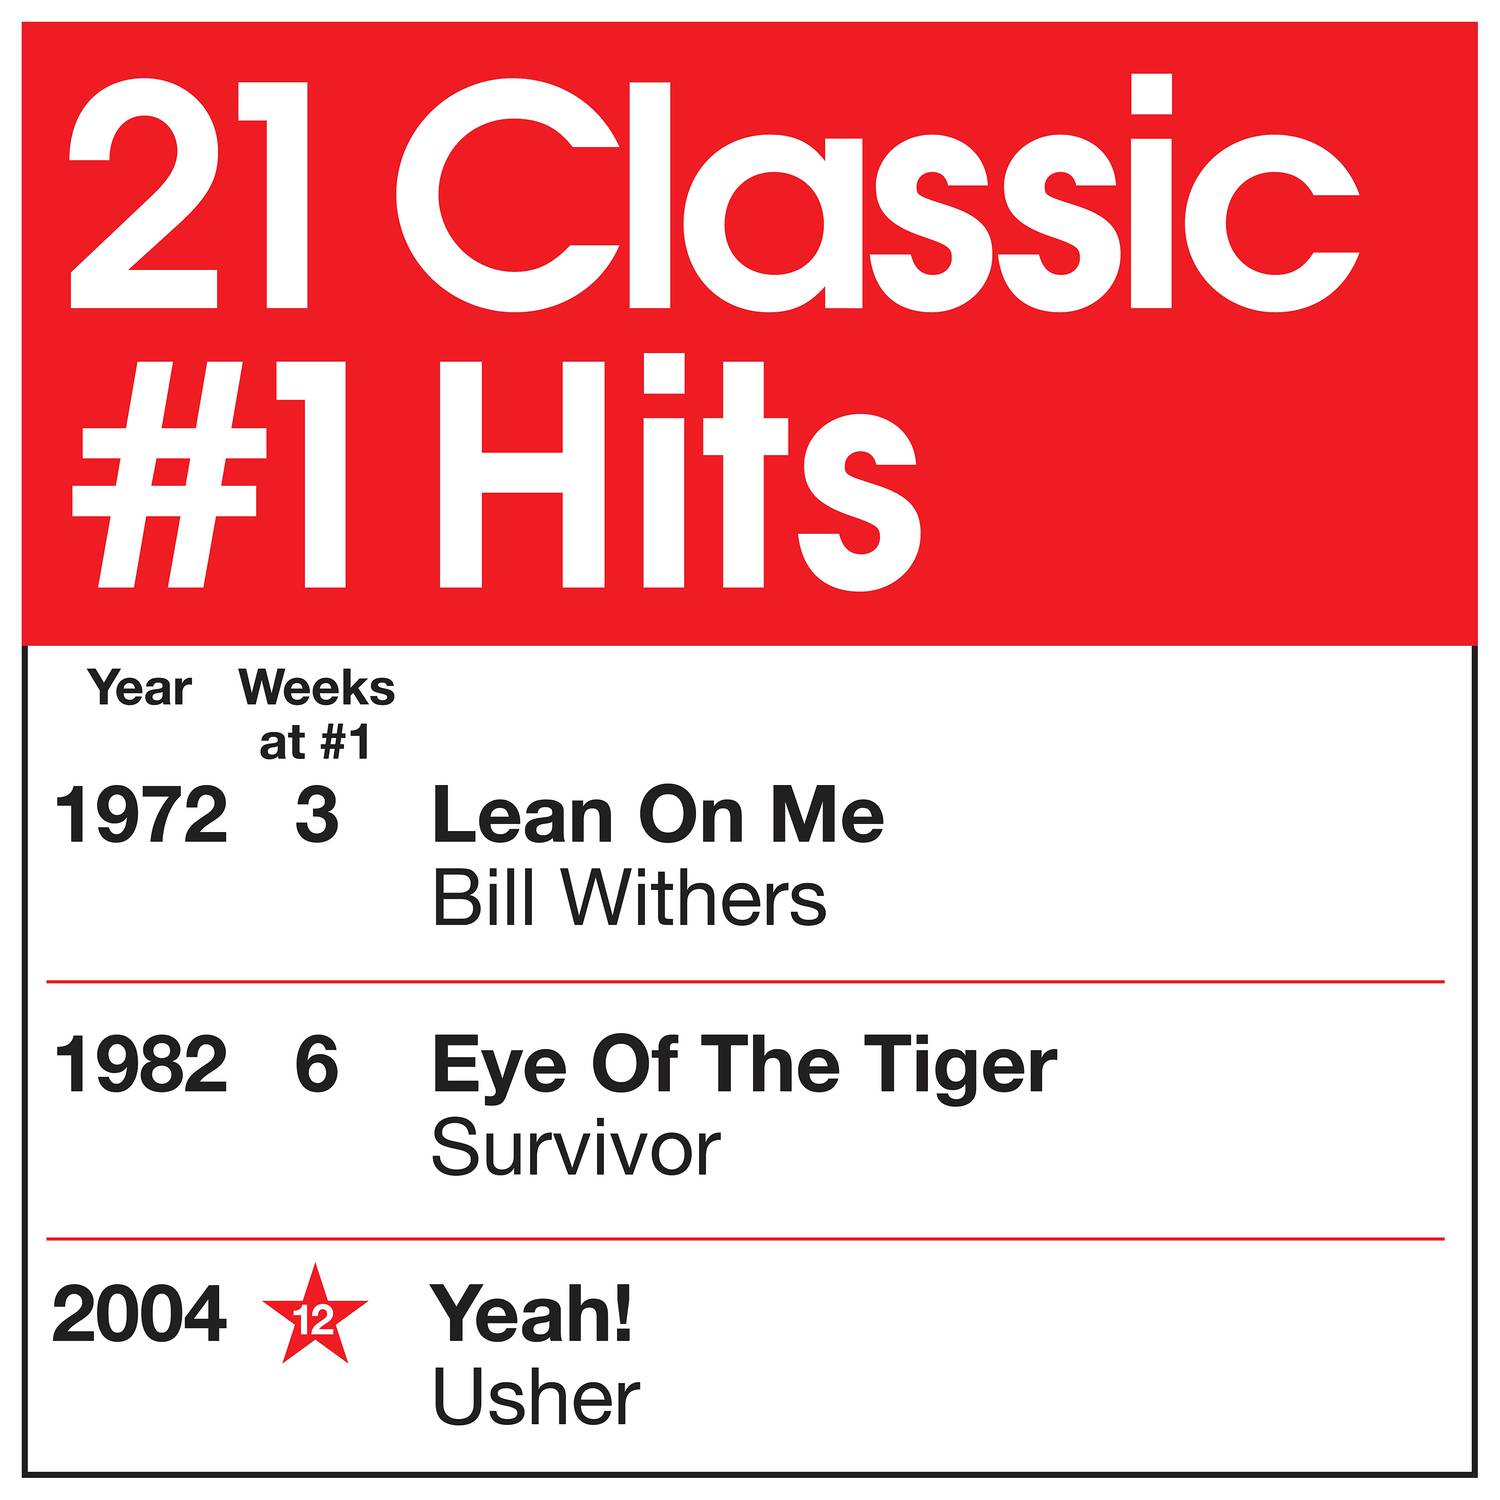 21 Classic #1 Hits